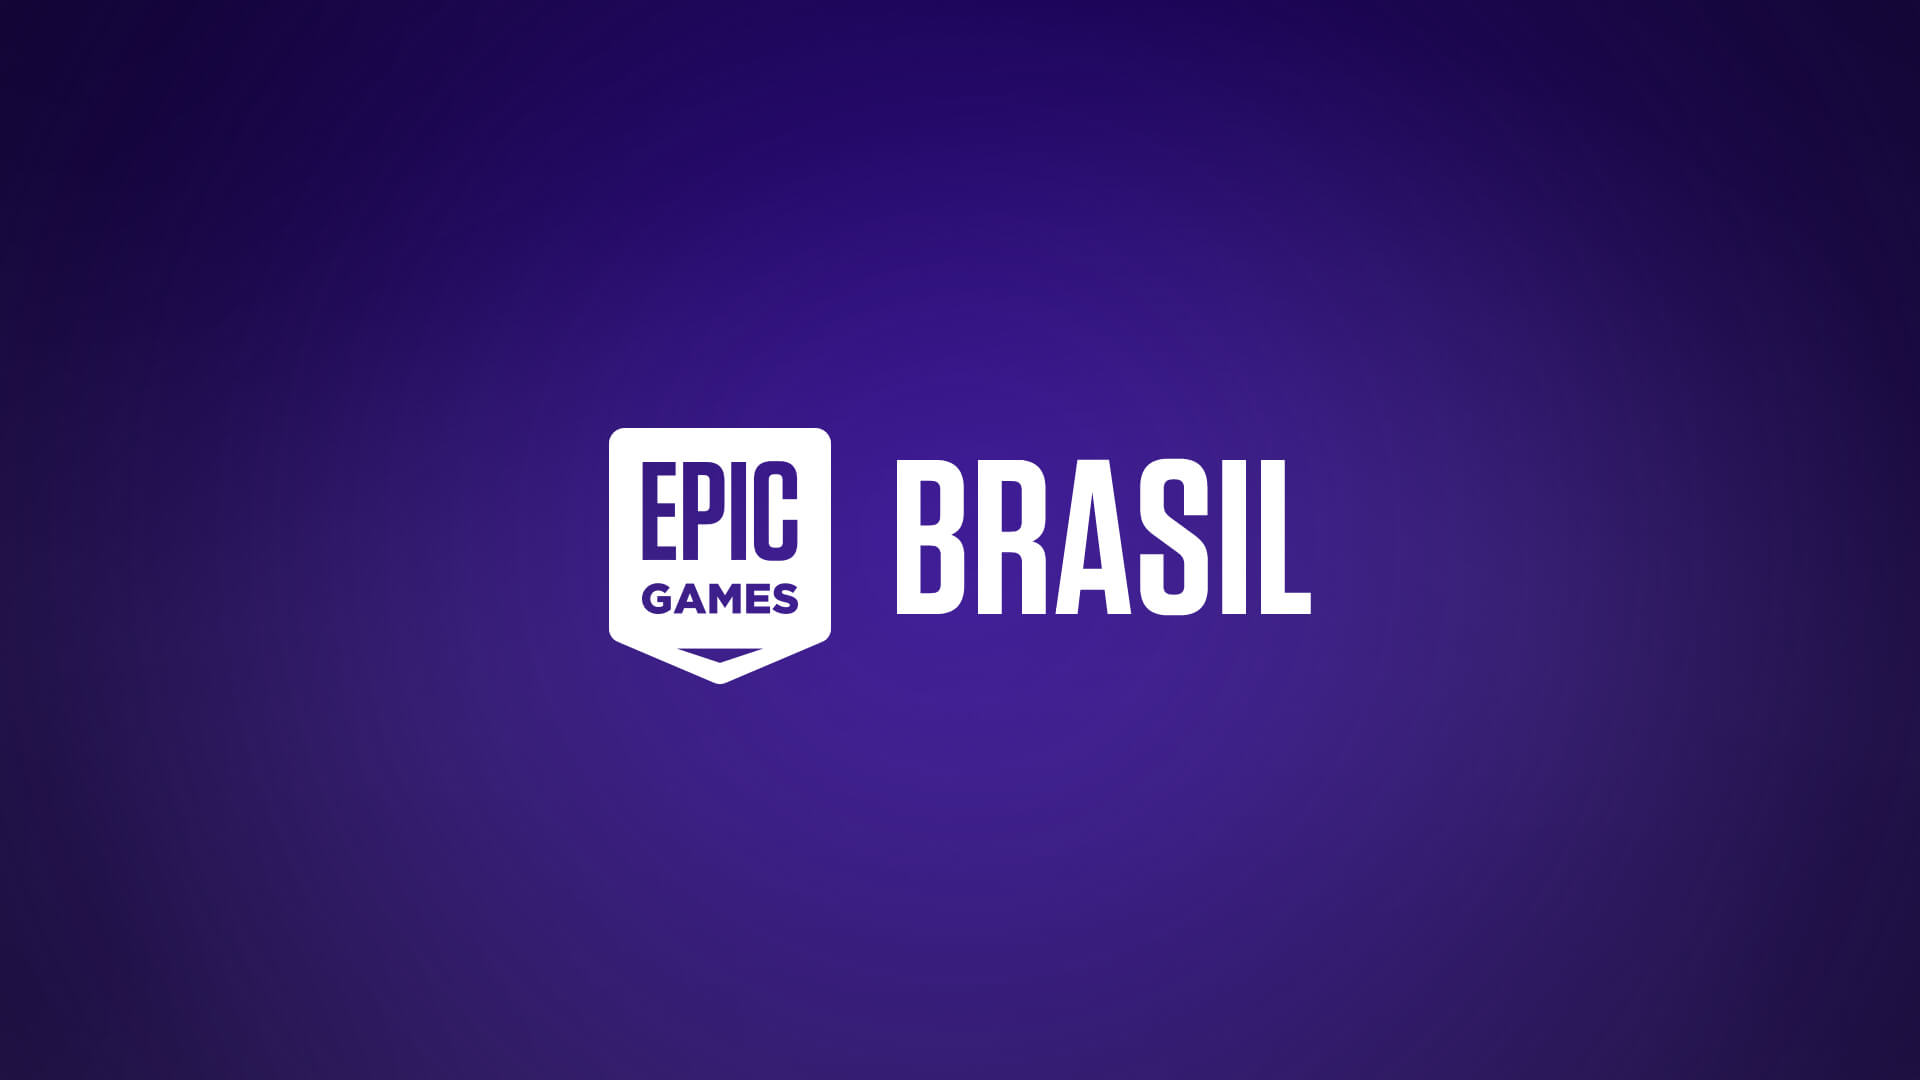 Site de streaming de games cresce no Brasil e já tem 15 mi de